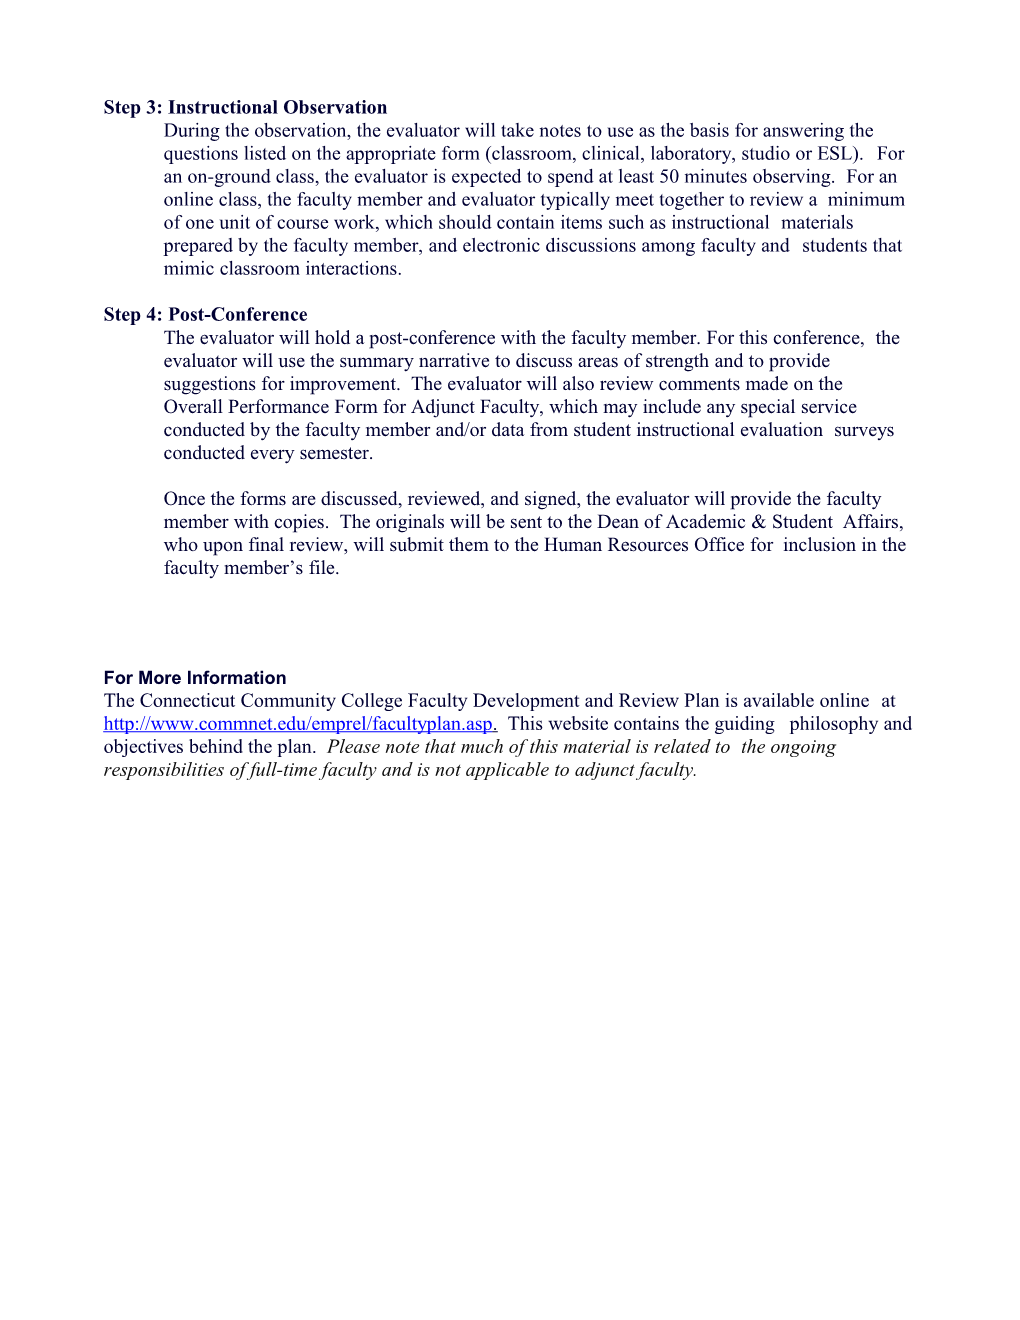 Adjunct Facultyinstructional Observation Evaluation 07/31/2014